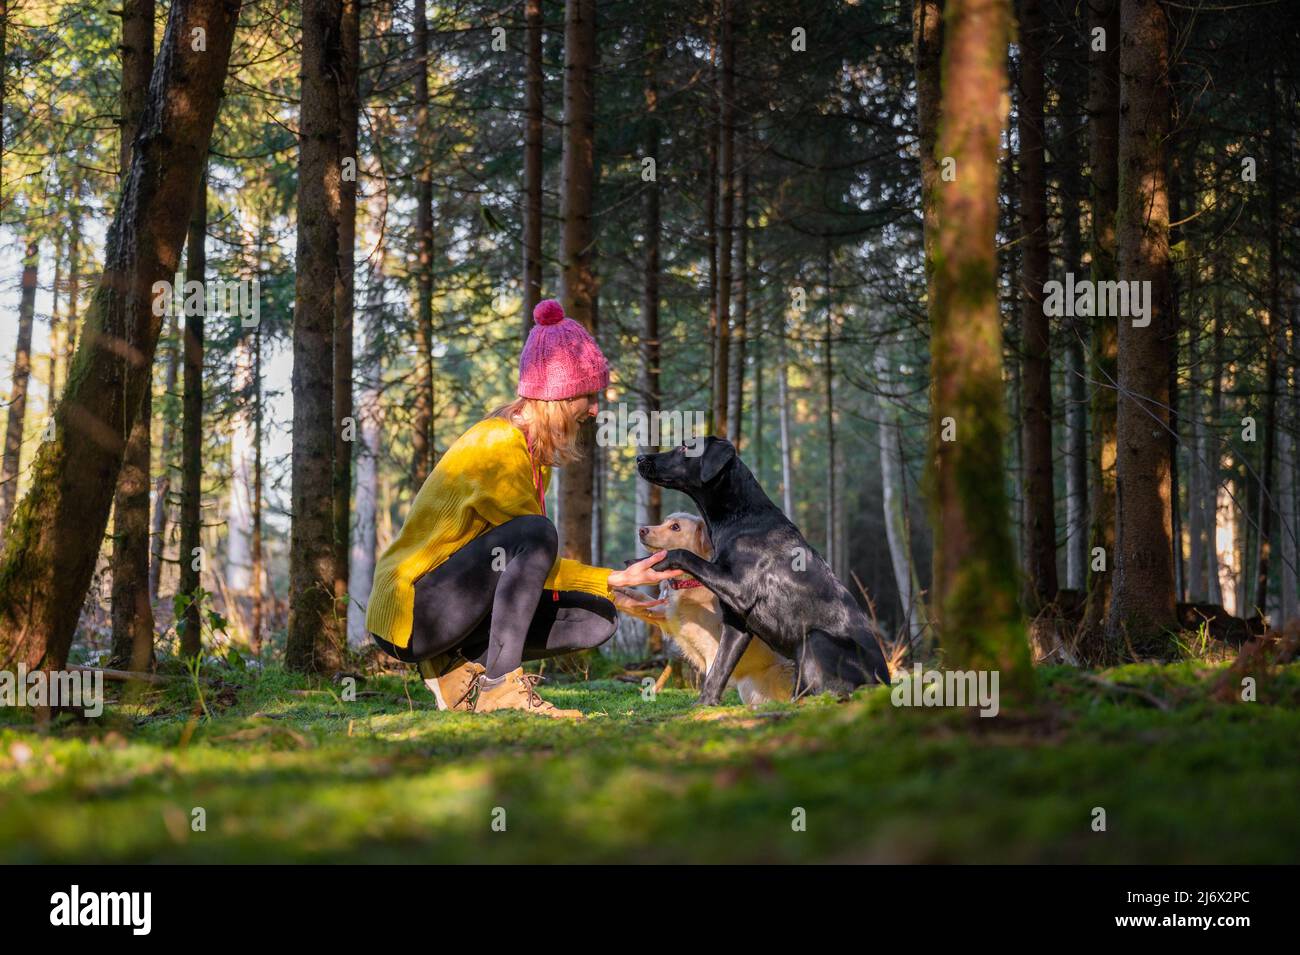 Schönes Bild der Freundschaft zwischen Mensch und Hund - junge Frau in leuchtend gelben Pullover kniet sich mit ihren beiden Hunden ihre Pfoten in ihr h Stockfoto